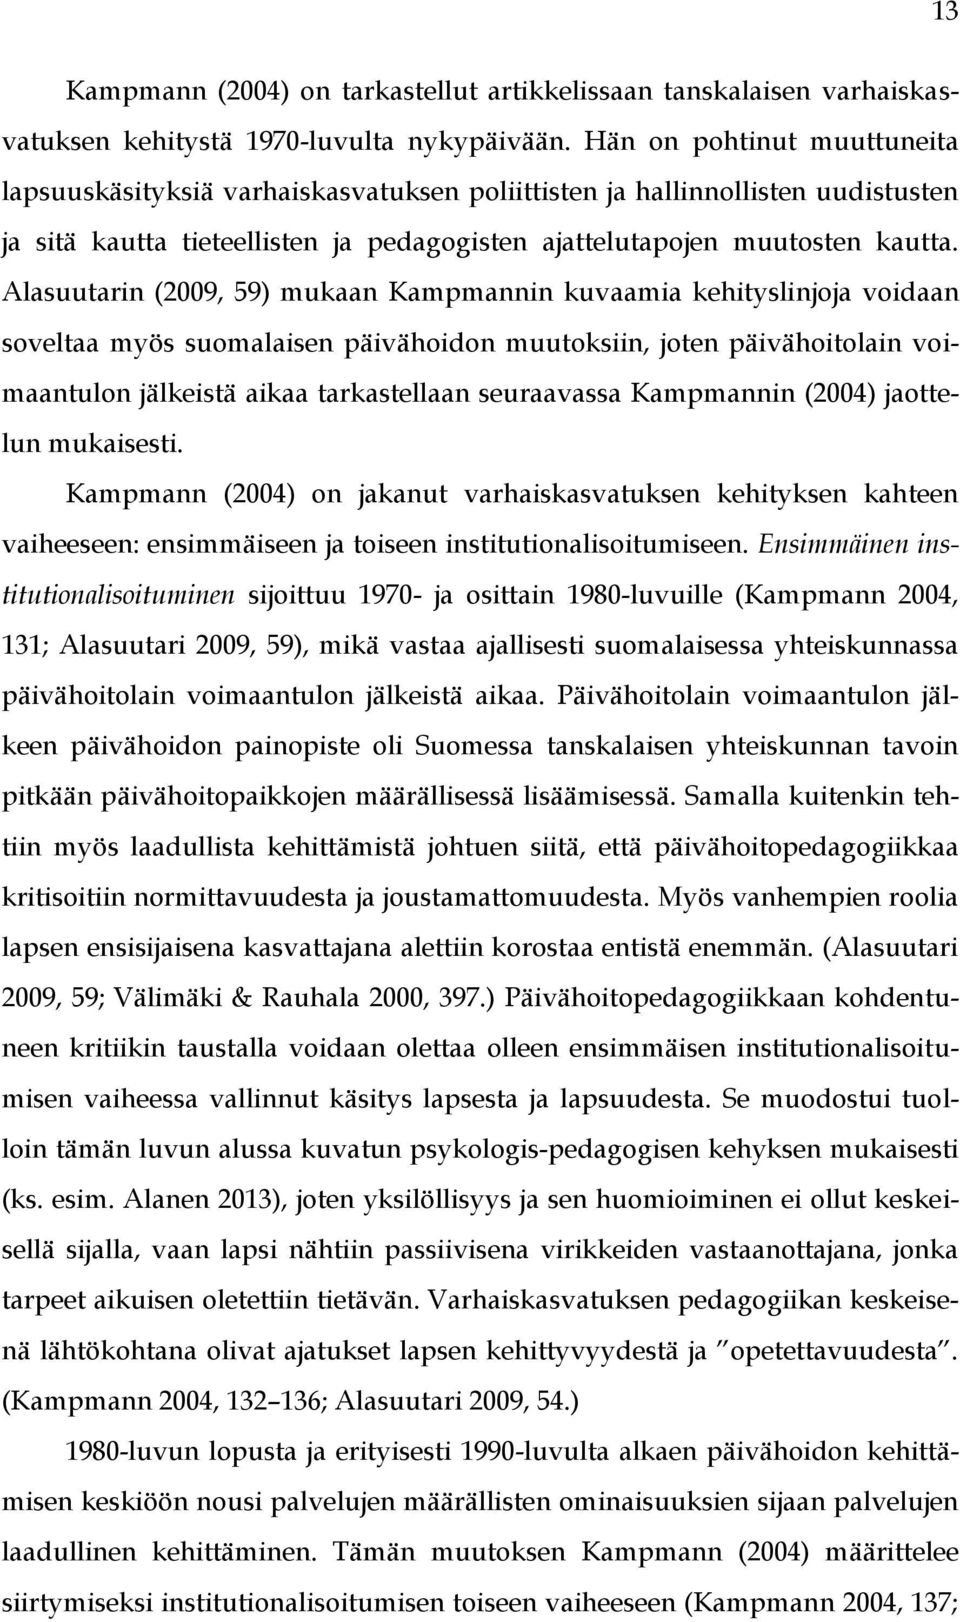 Alasuutarin (2009, 59) mukaan Kampmannin kuvaamia kehityslinjoja voidaan soveltaa myös suomalaisen päivähoidon muutoksiin, joten päivähoitolain voimaantulon jälkeistä aikaa tarkastellaan seuraavassa